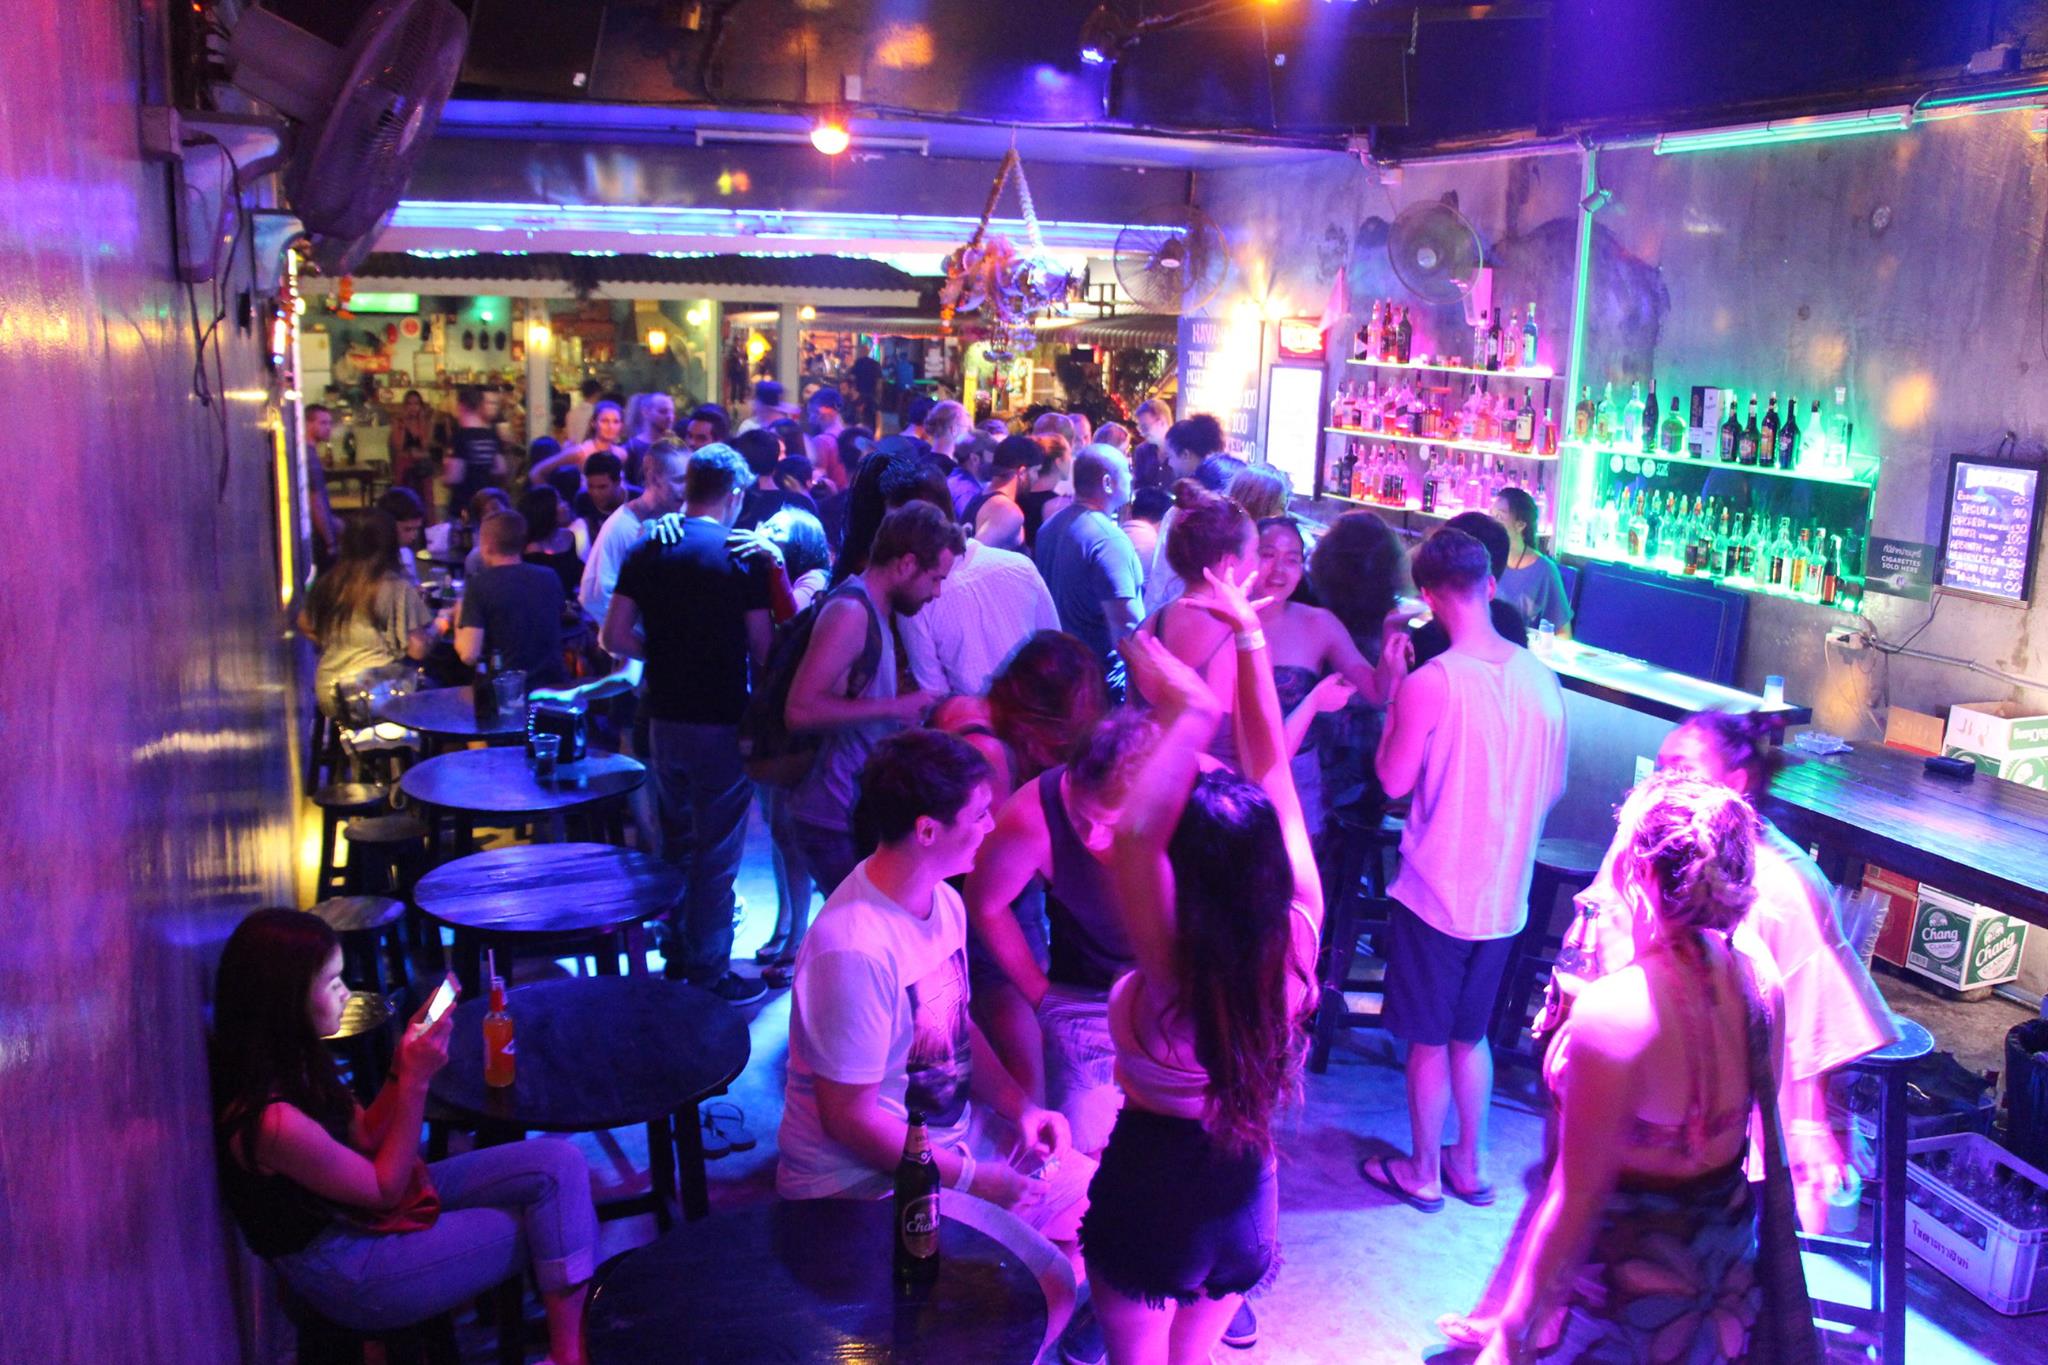 ฮาวาน่า บาร์ เชียงใหม่ (Havana Bar Chiang mai Thailand) : เชียงใหม่ (Chiang Mai)